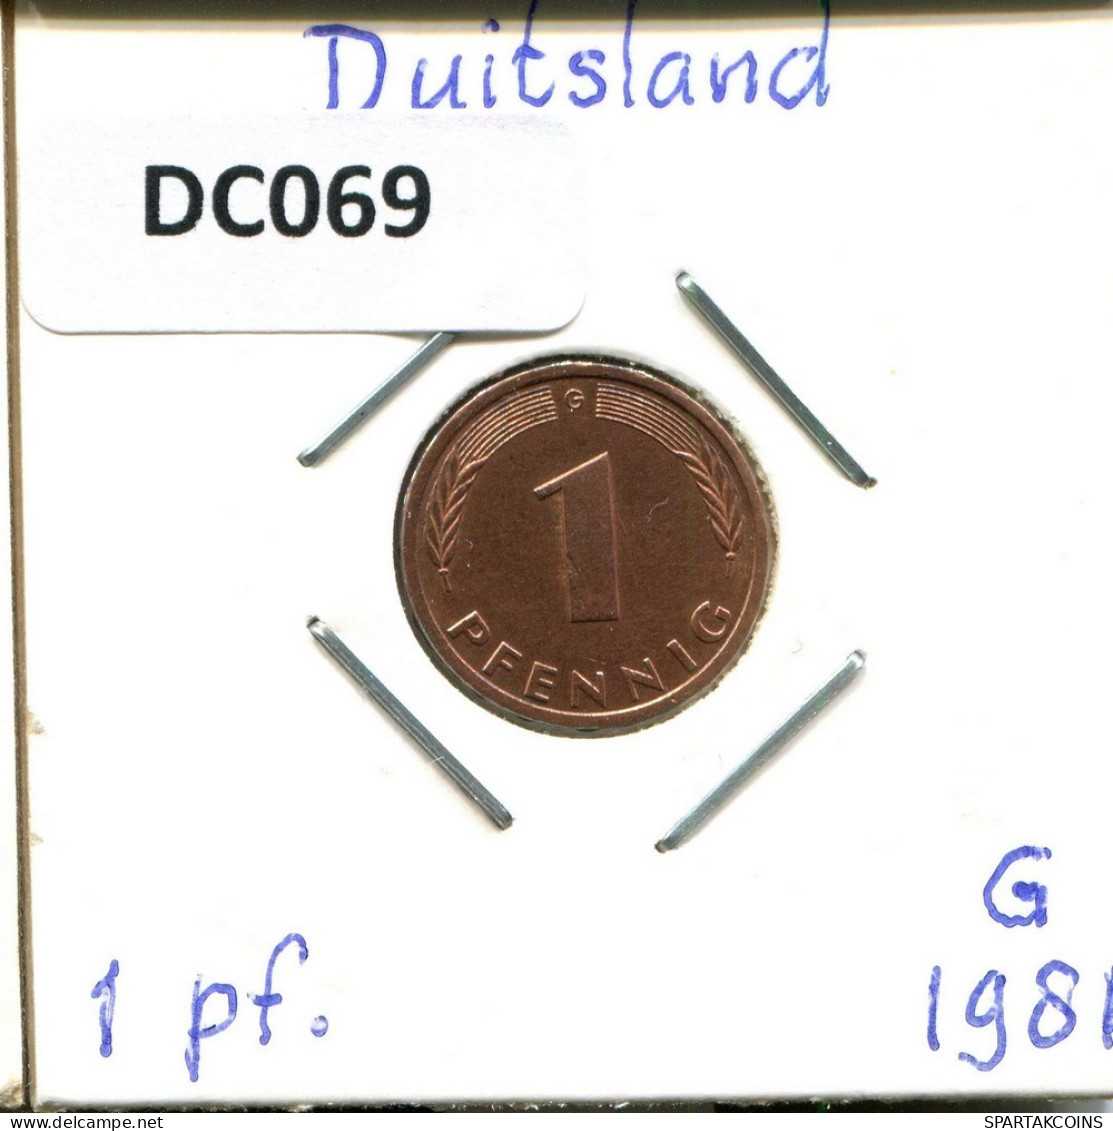 1 PFENNIG 1981 G BRD ALEMANIA Moneda GERMANY #DC069.E.A - 1 Pfennig